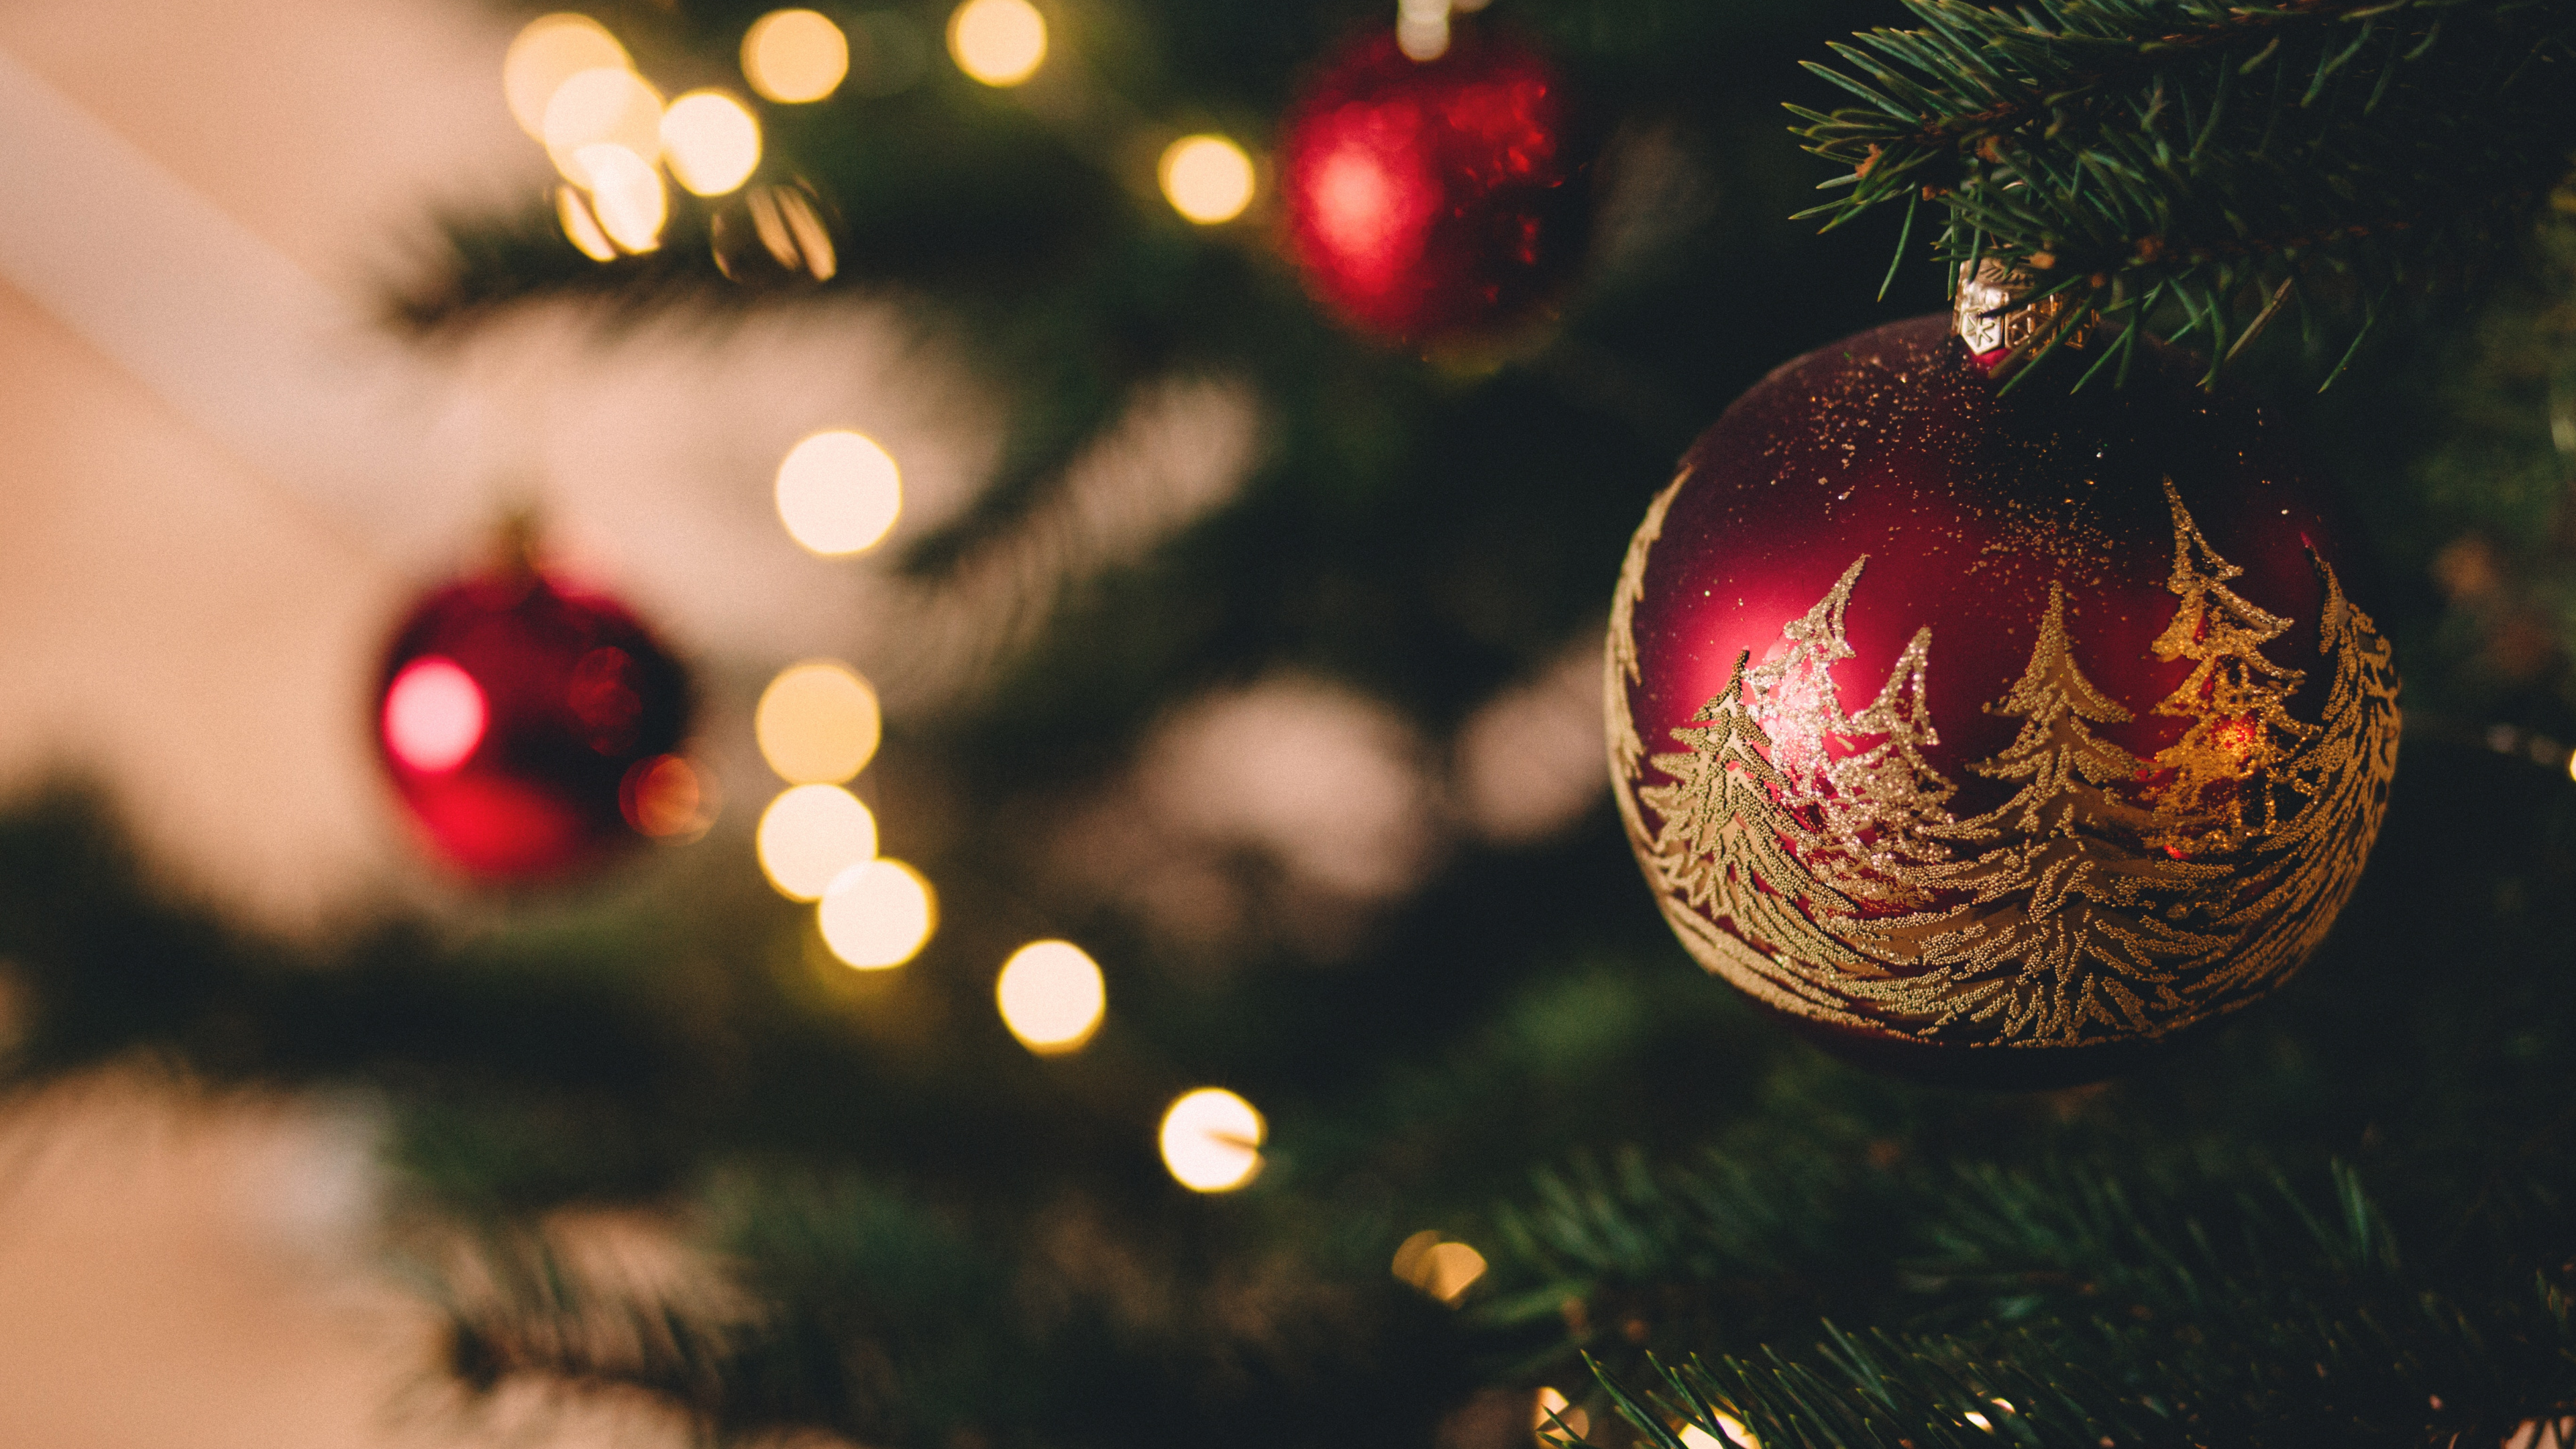 Weihnachten, Weihnachtsbaum, Weihnachtsmann, Christmas Ornament, Baum. Wallpaper in 3840x2160 Resolution